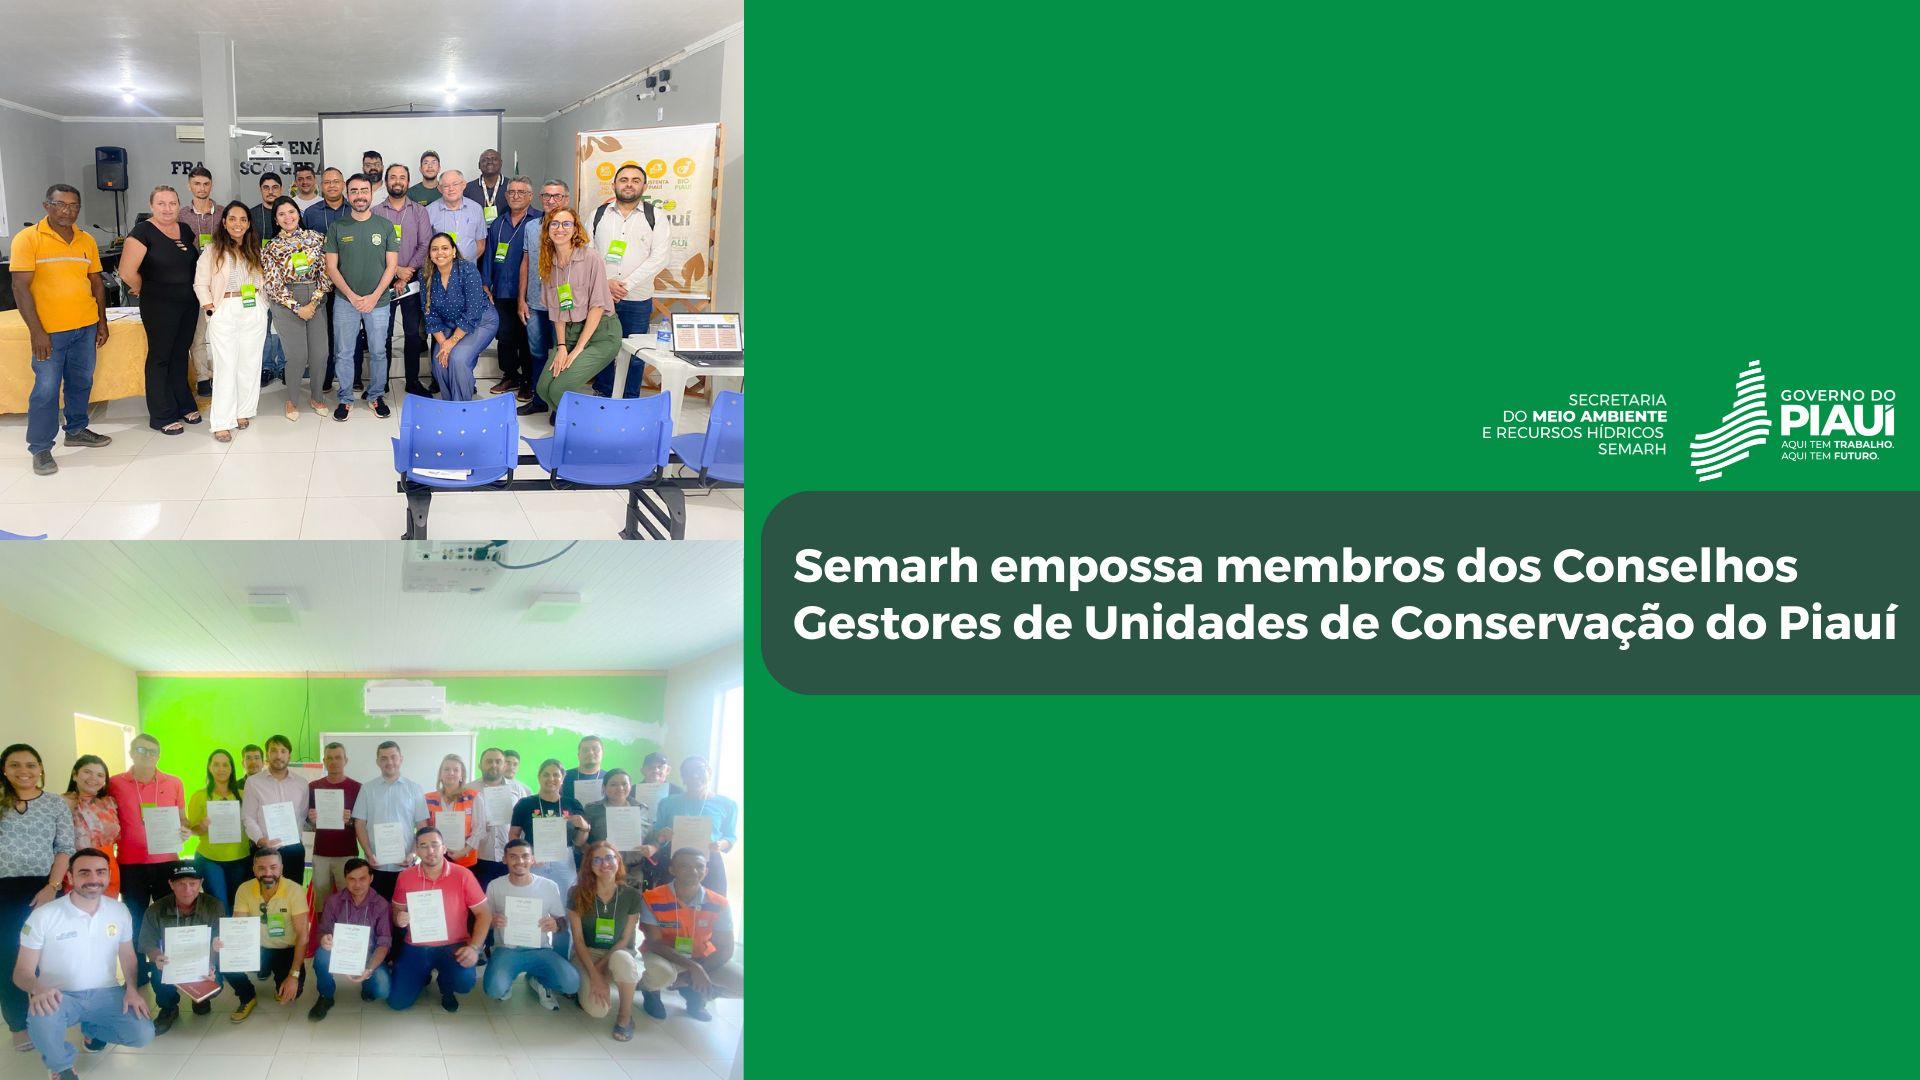 Semarh empossa membros dos Conselhos Gestores de mais Unidades de Conservação do Piauí